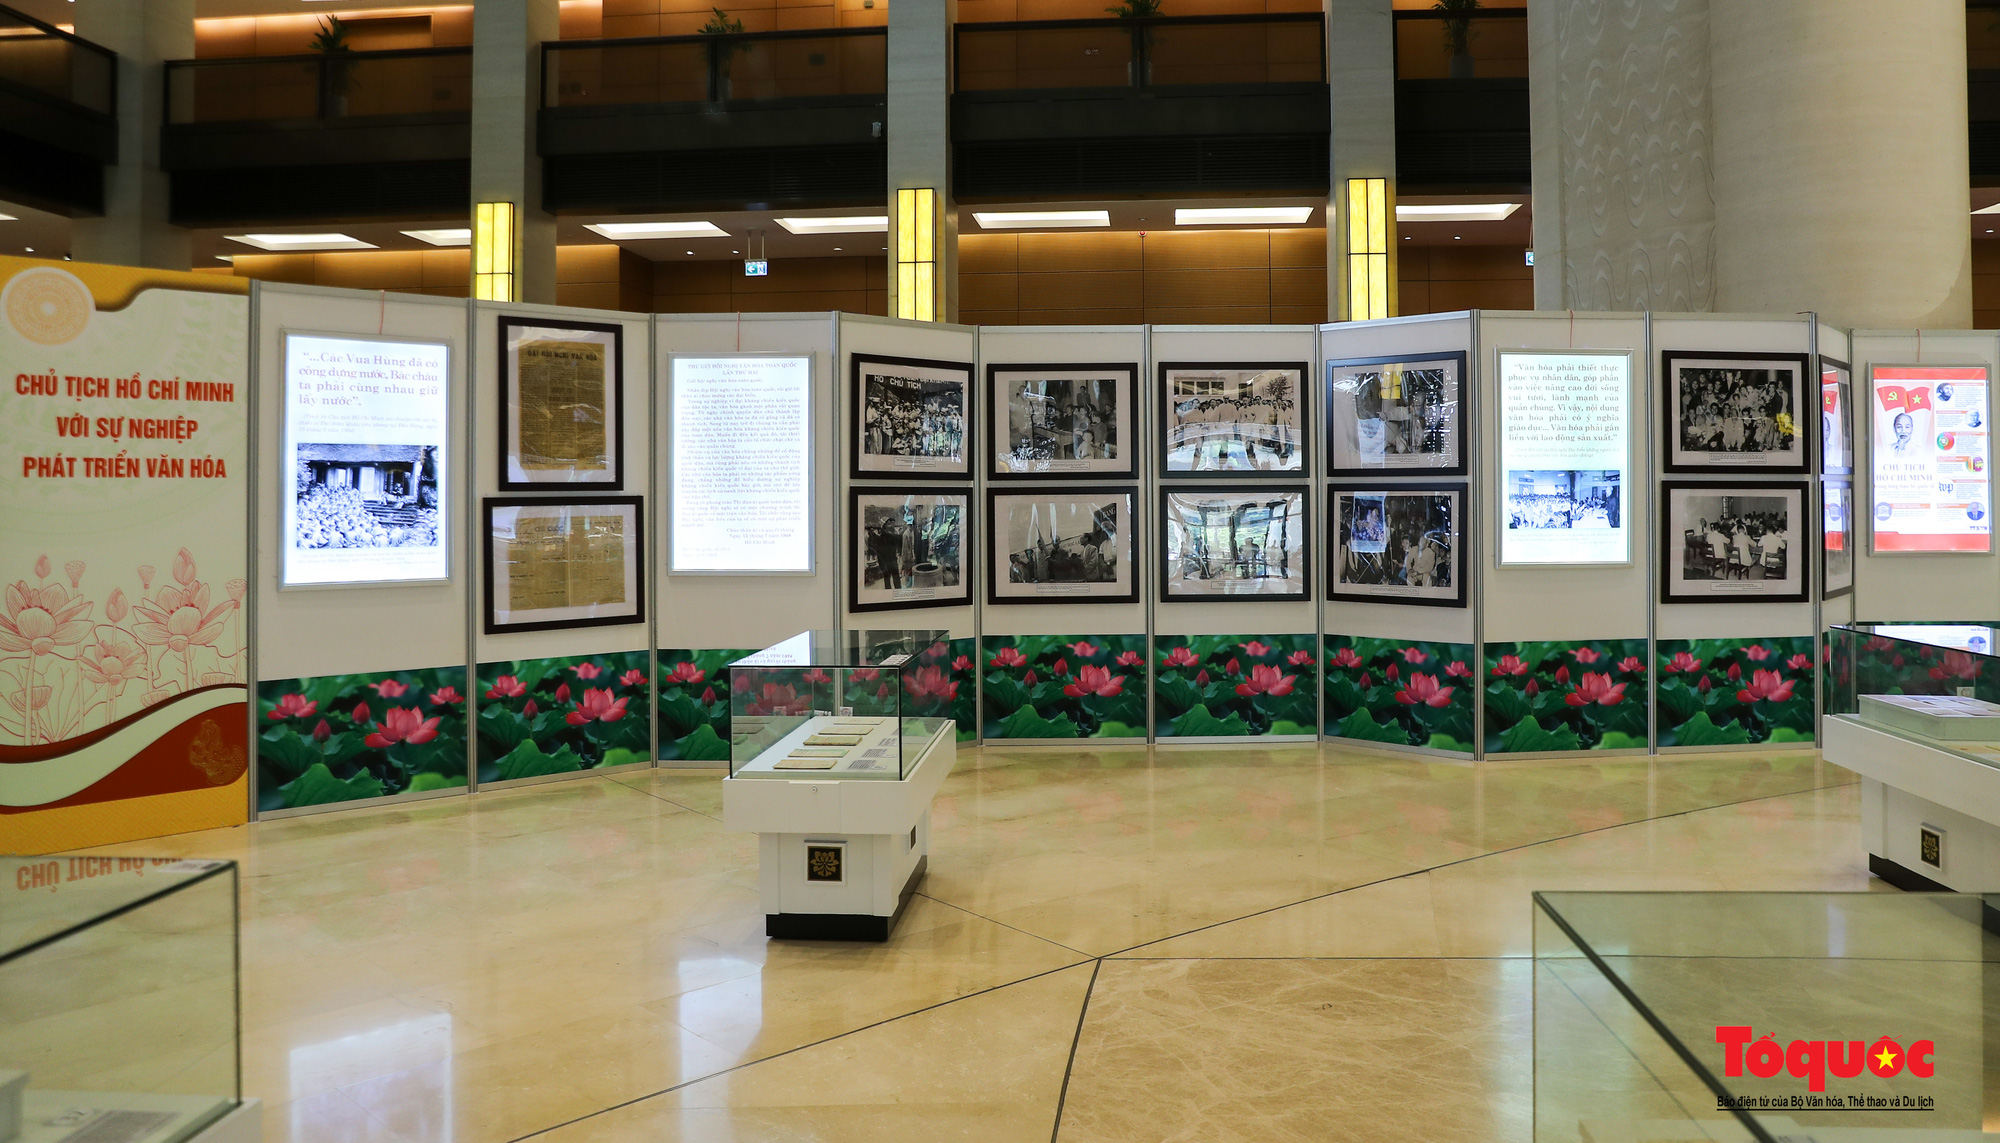 Triển lãm “Văn hóa soi đường cho quốc dân đi” trưng bày 320 tác phẩm ảnh nghệ thuật tiêu biểu - Ảnh 13.